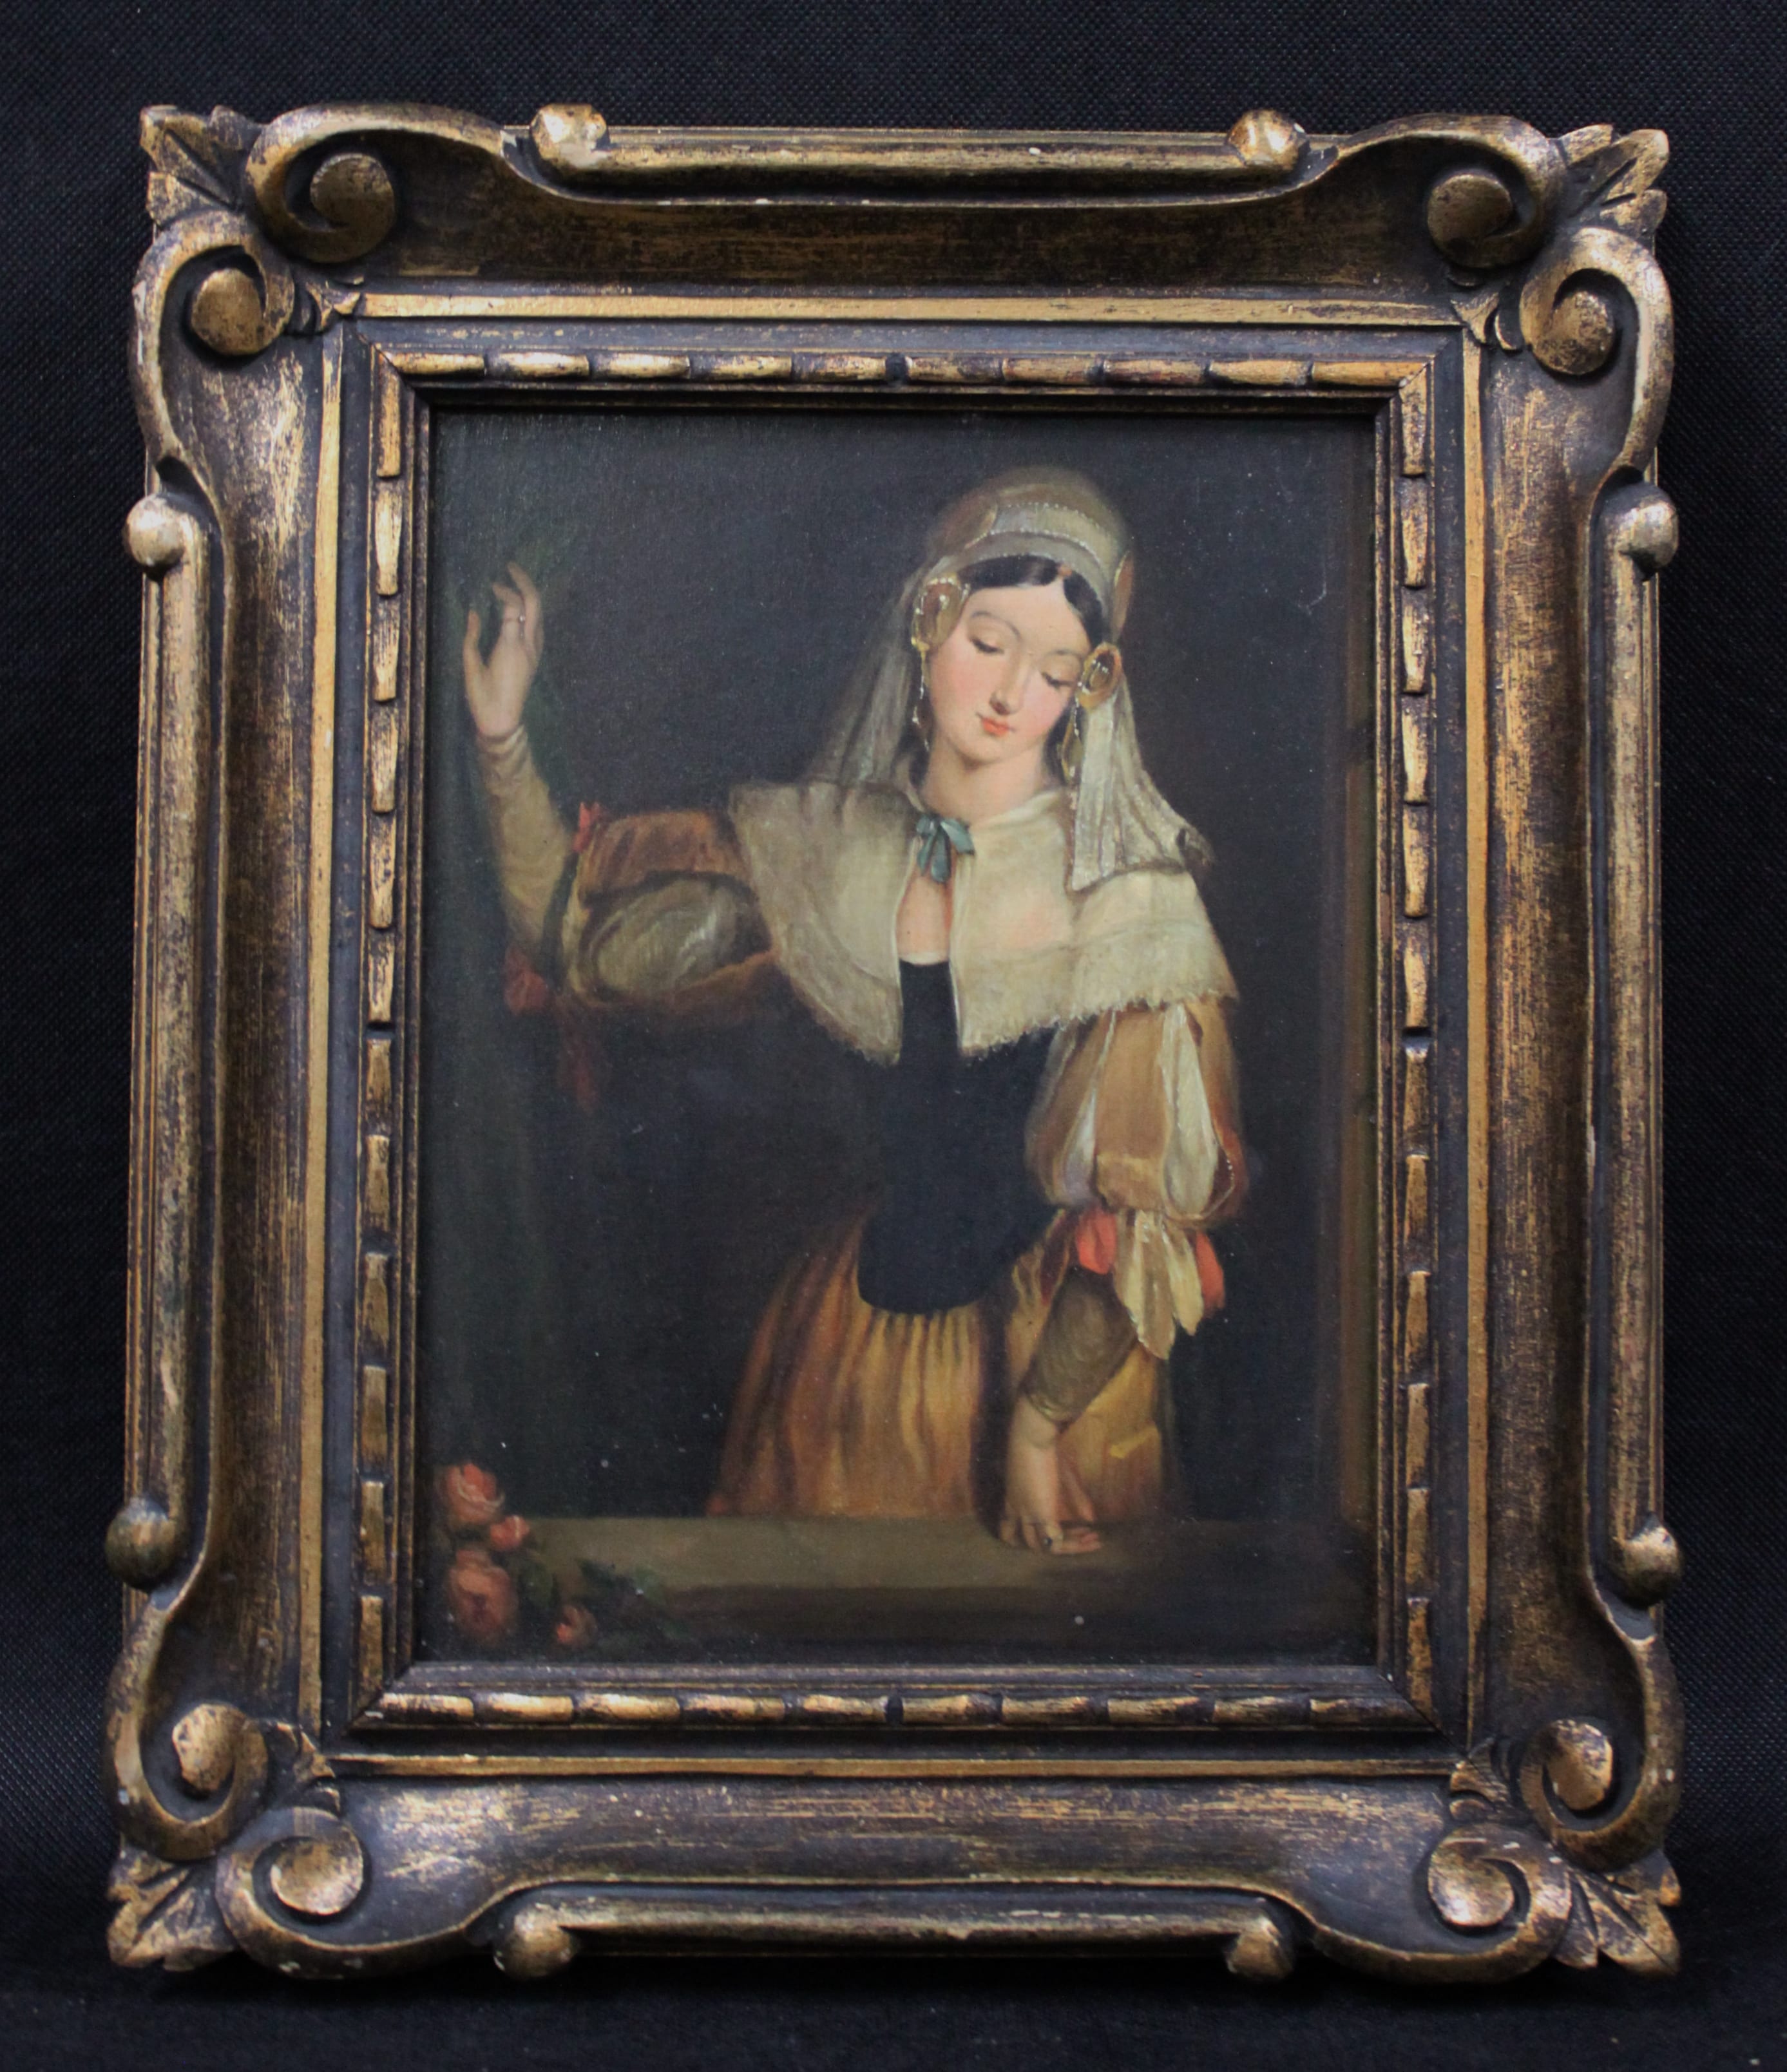 for sale auction estate renaissance painting 17th century fine art NeelyAuction.com <https://neelyauction.com////